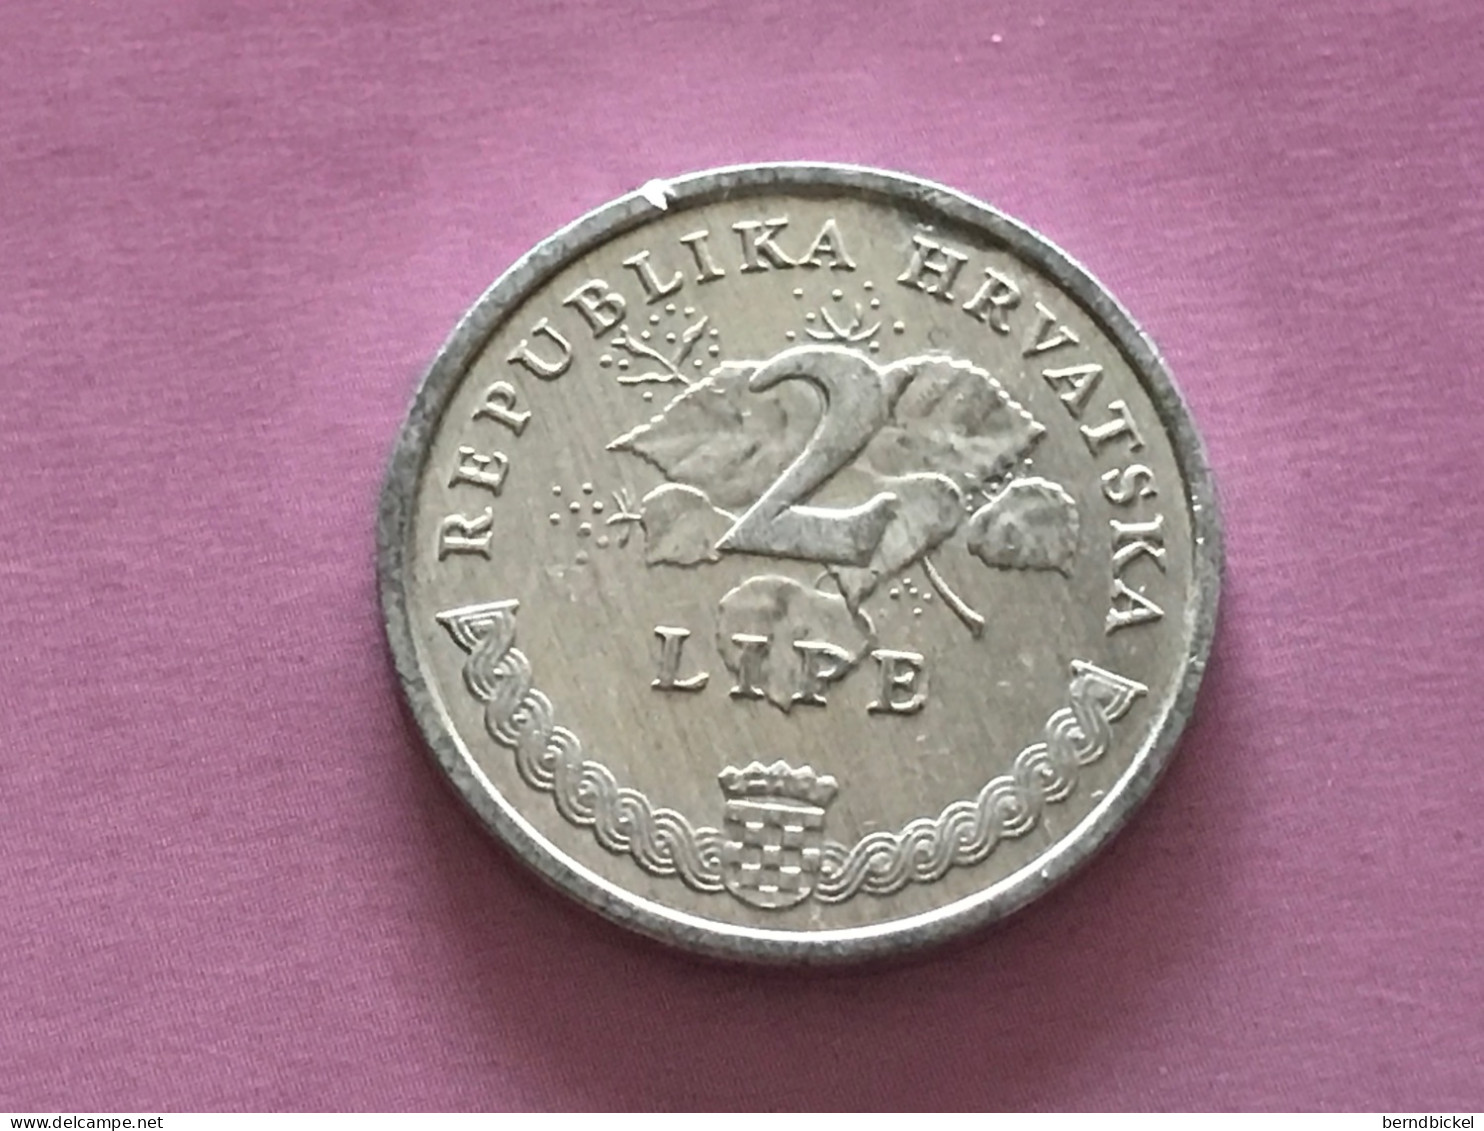 Münze Münzen Umlaufmünze Kroatien 2 Lipa 2005 - Kroatien